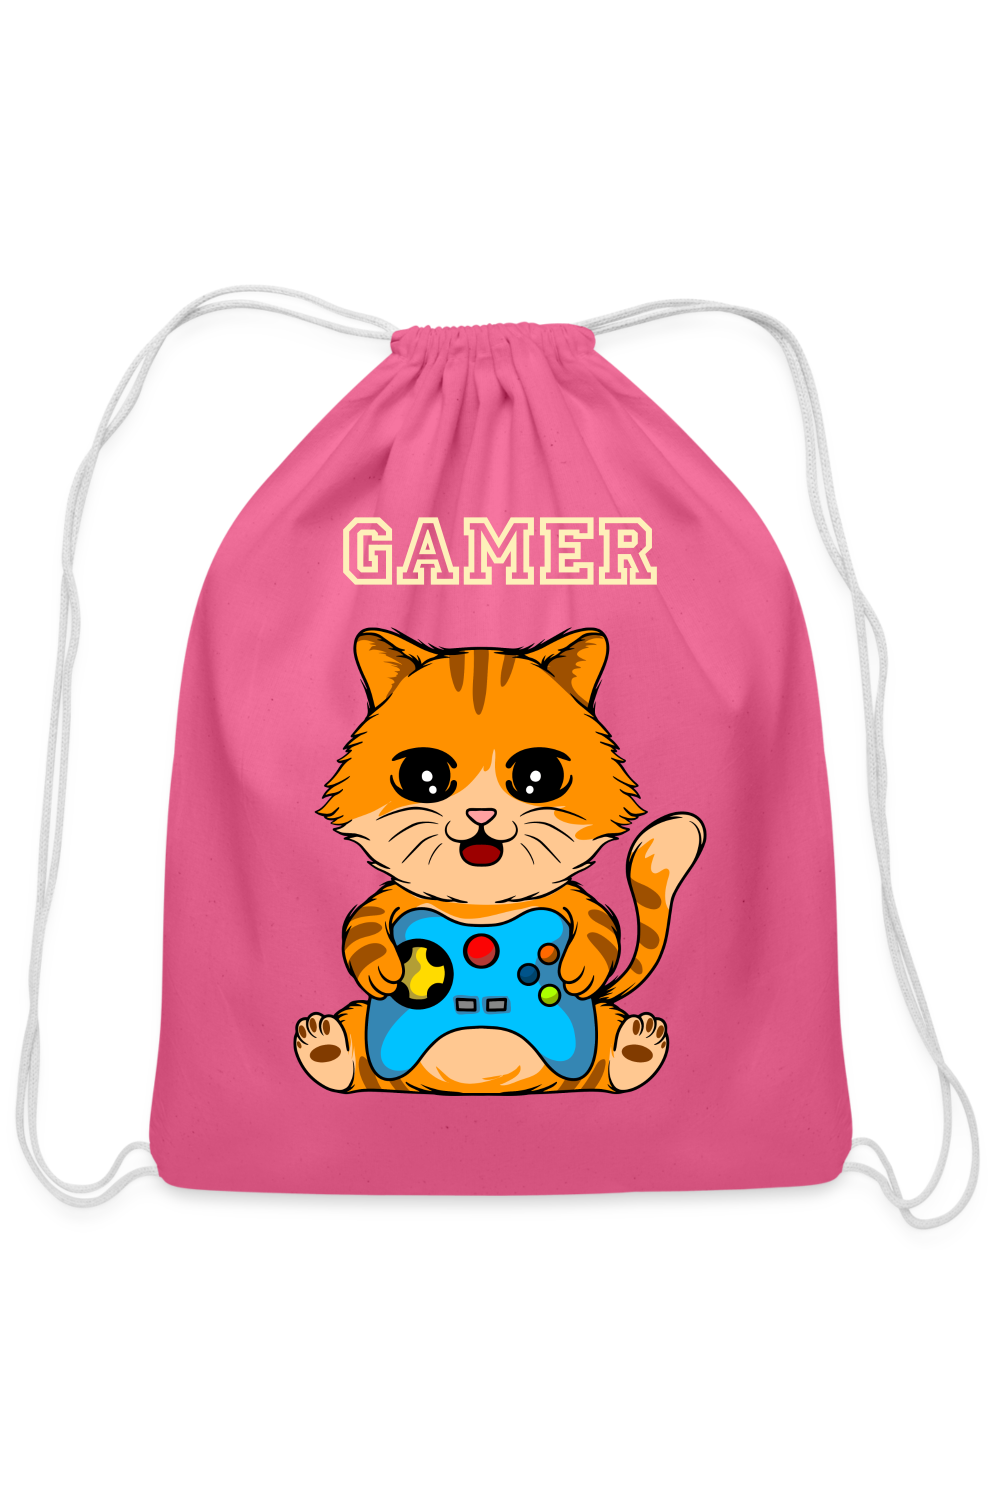 Girls Gamer Cotton Drawstring Bag - pink - NicholesGifts.online